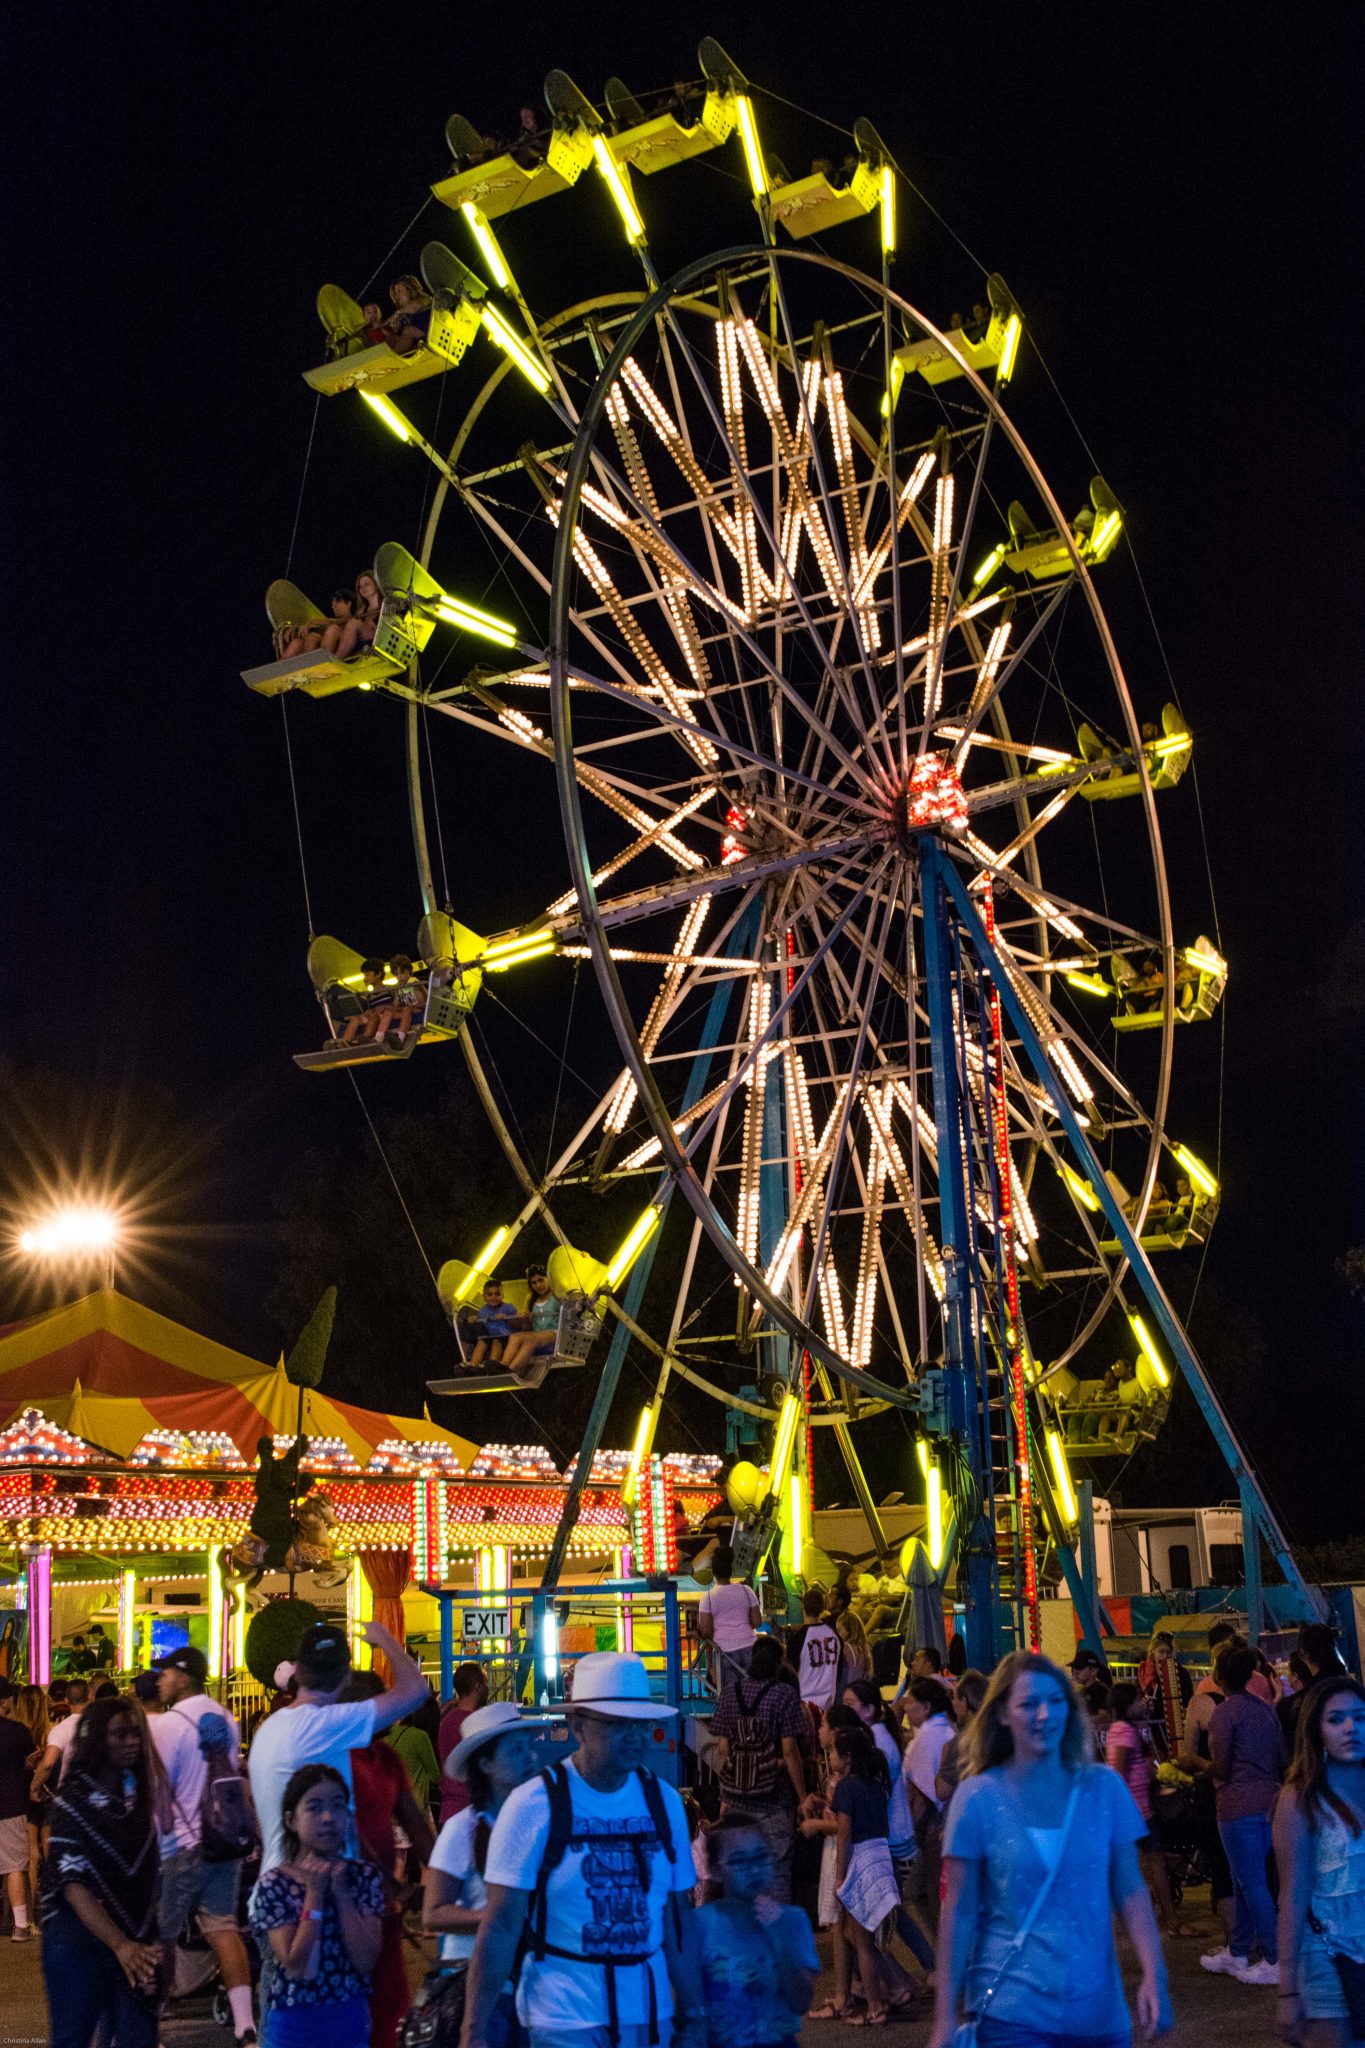 Ferris wheel and crowd at night california state fair sacramento allan